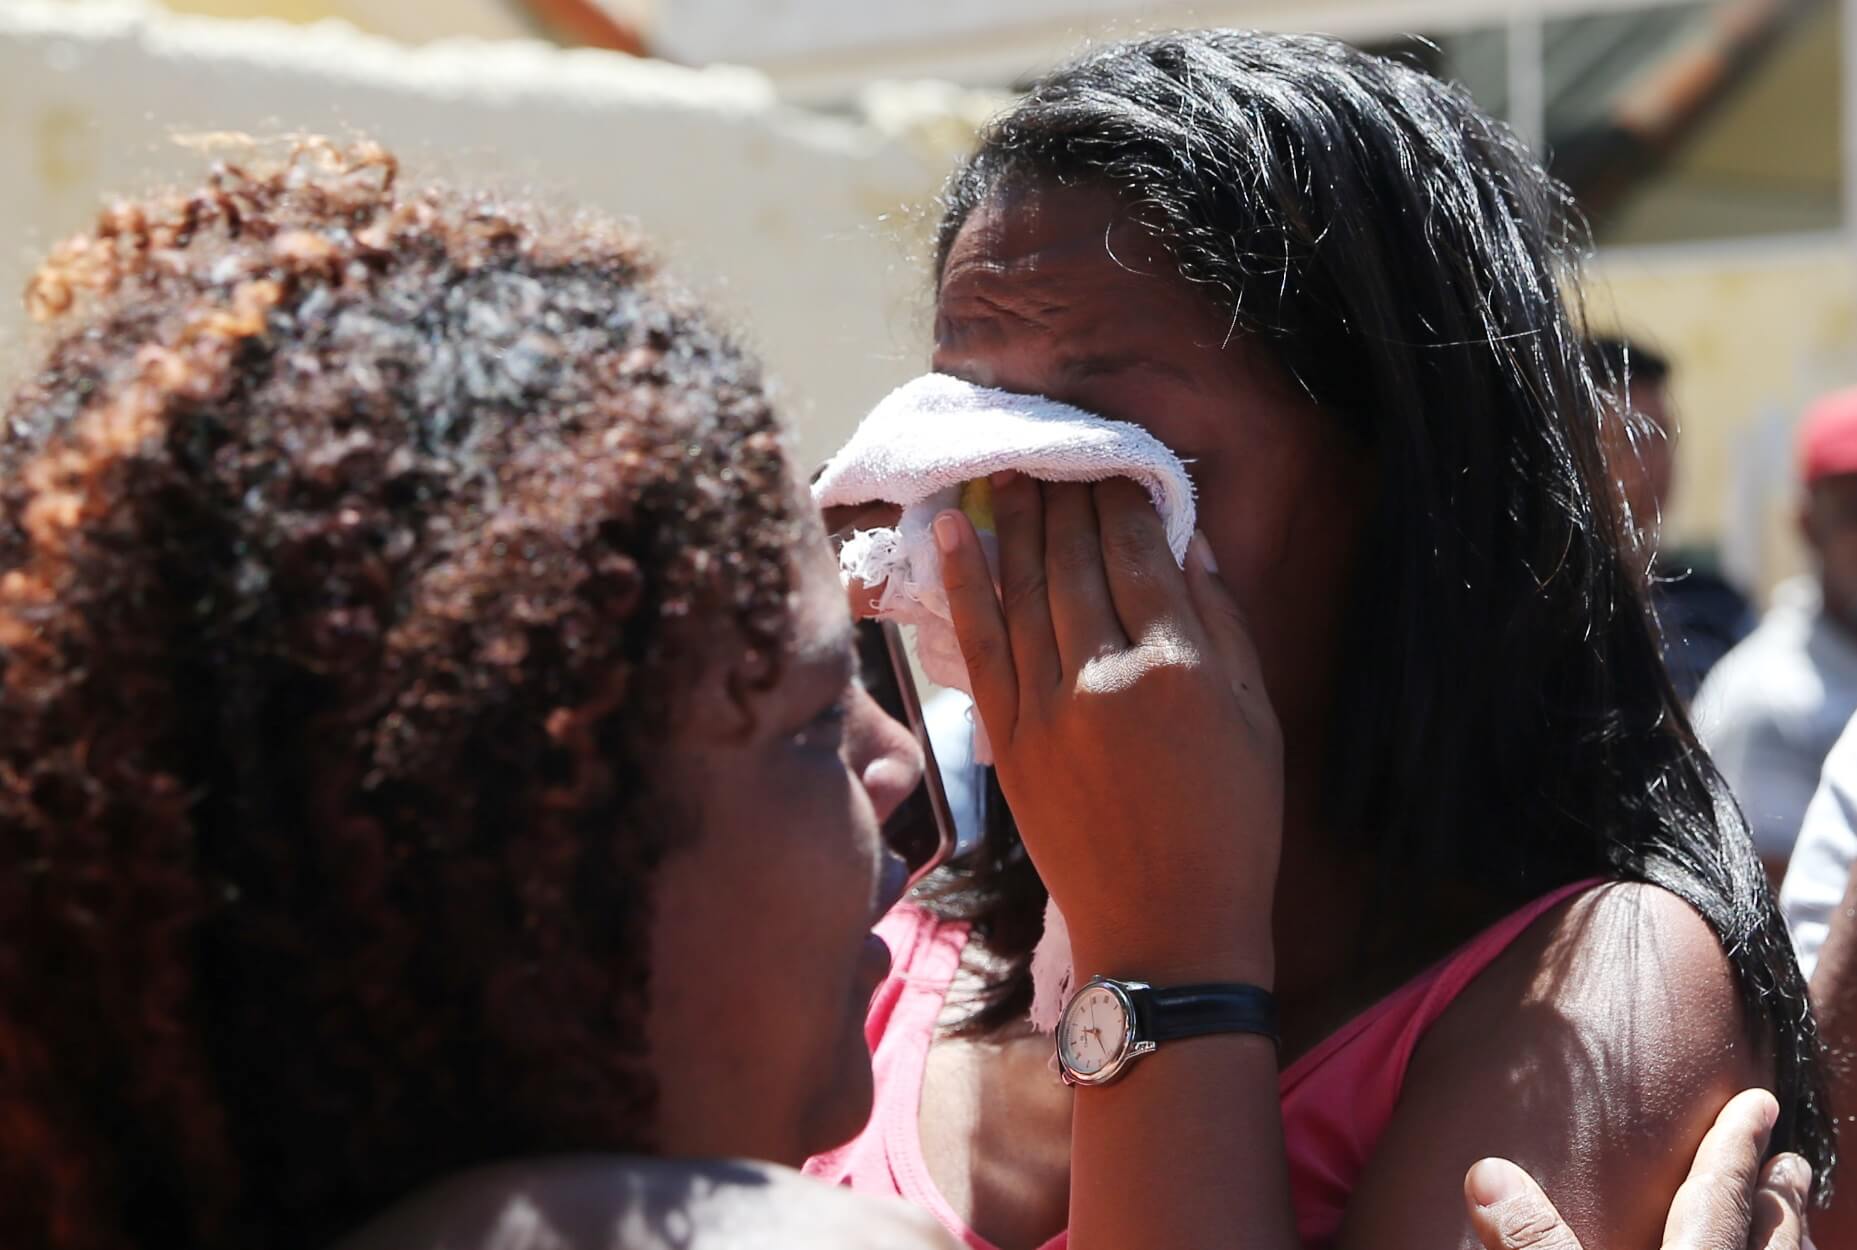 Βραζιλία – σχολείο: 10 νεκροί, ανάμεσά τους 6 μαθητές! Αυτοκτόνησαν μετά το μακελειό οι δύο δράστες